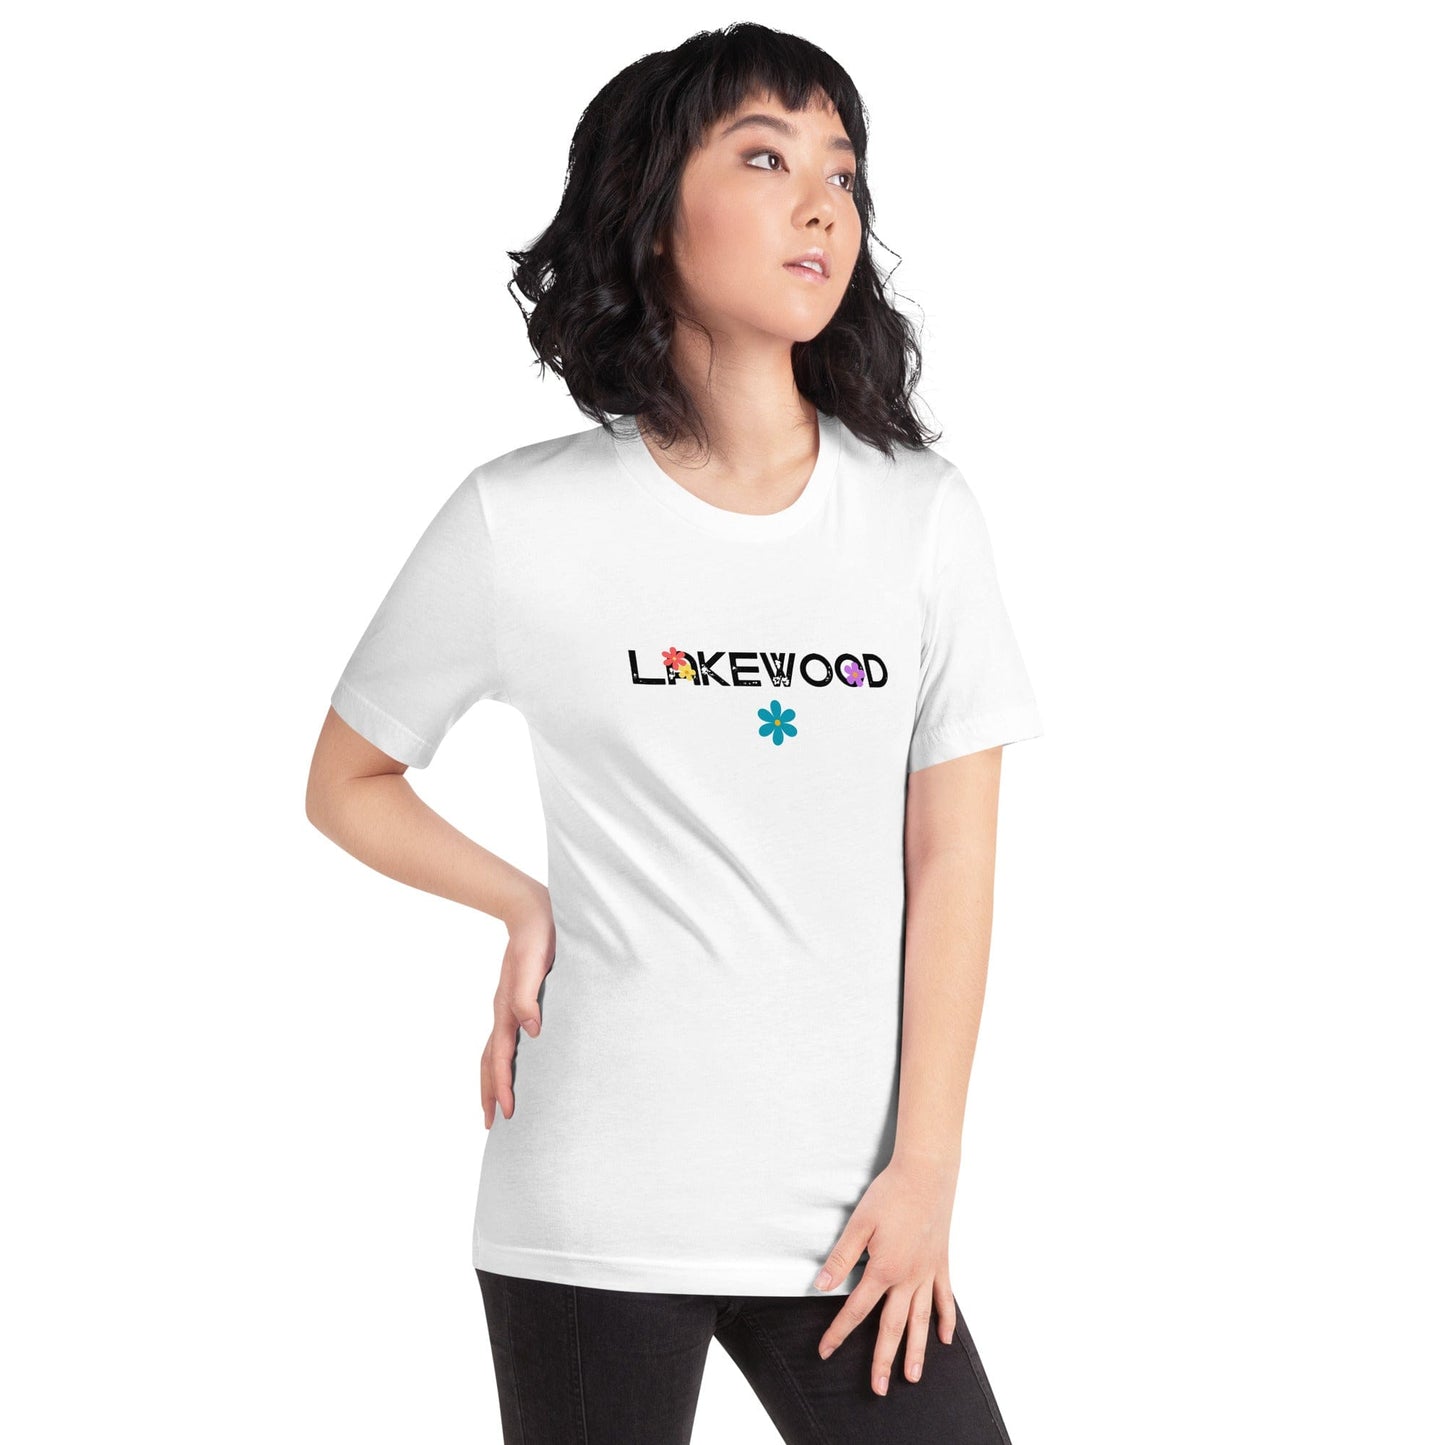 Lakewood Flower Child Unisex T-Shirt